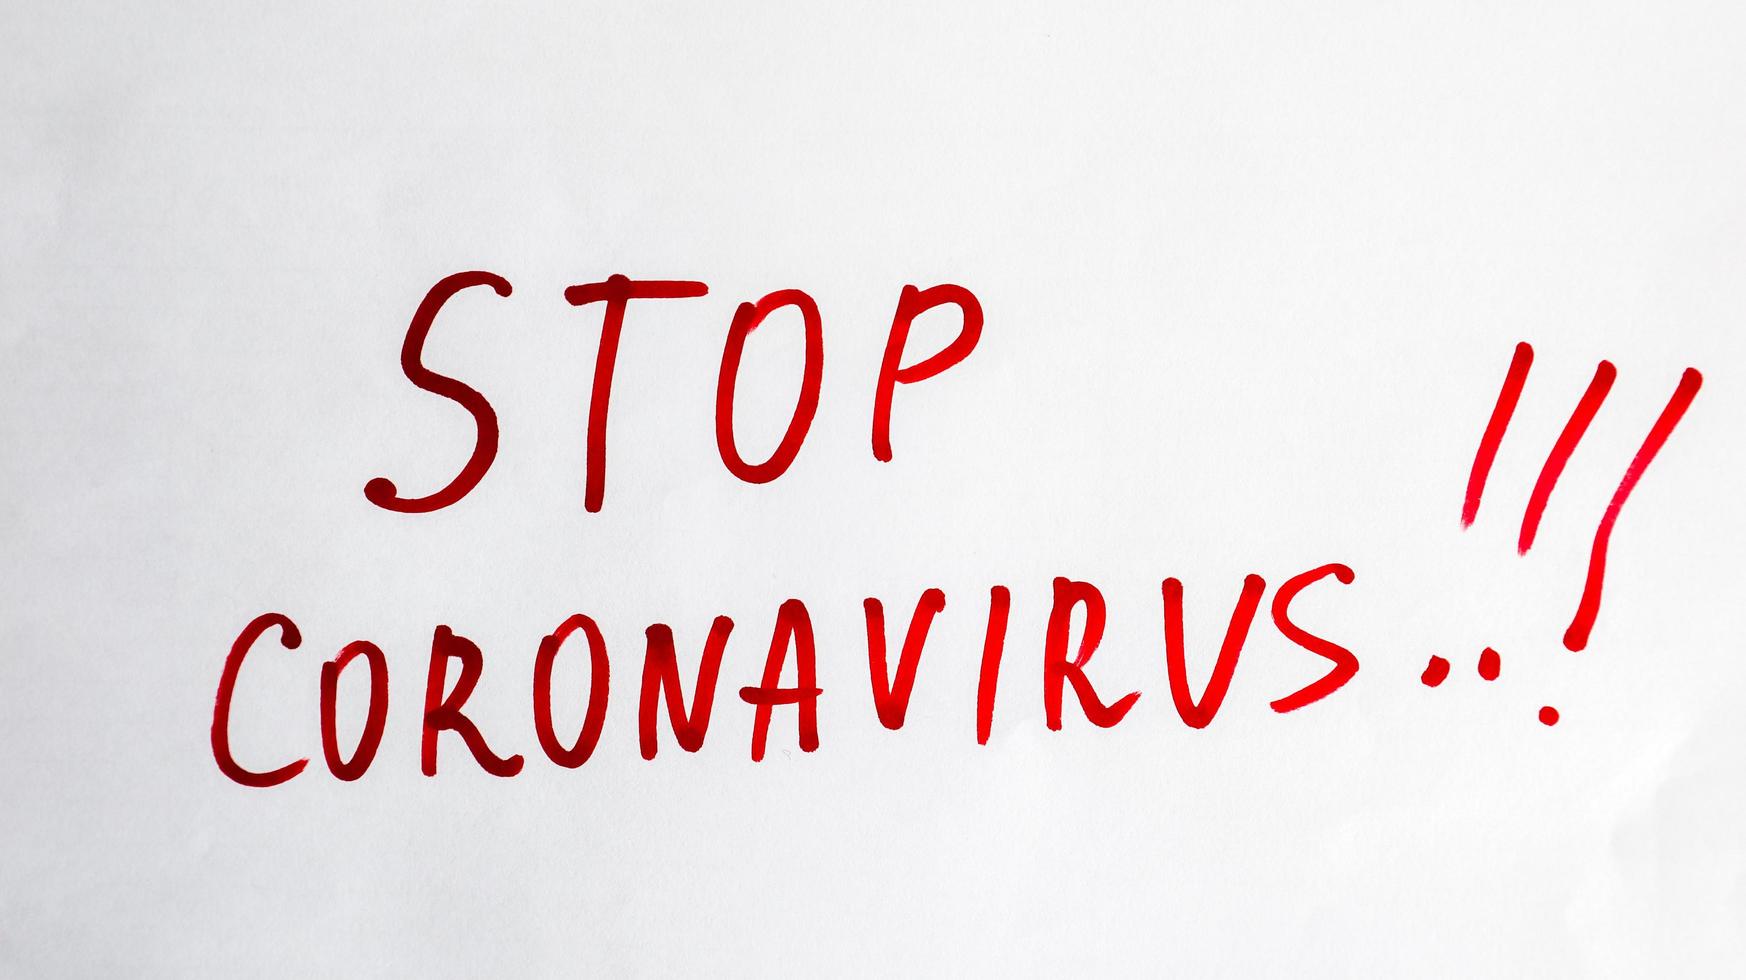 nytt coronavirus - 2019-nkov. stoppa coronavirus inskription med röd markör på ett vitt ark. begreppet karantän coronavirus i världen. foto